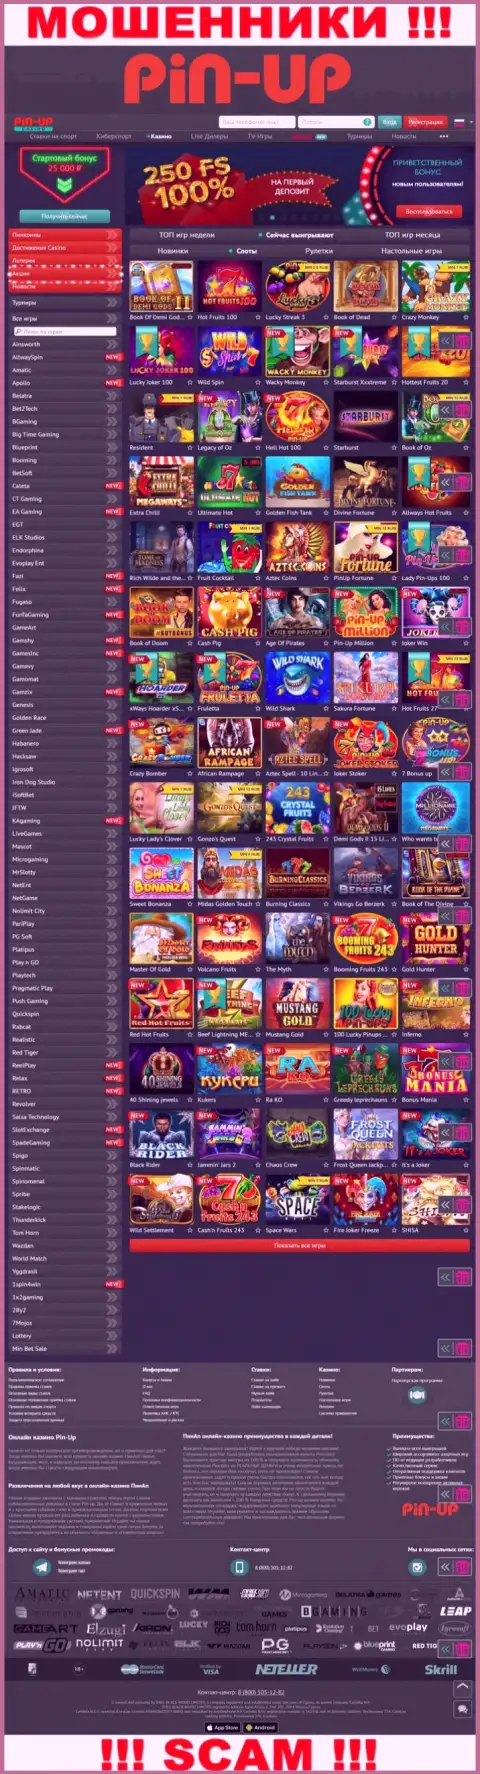 Pin-Up Casino - это официальный веб-сервис интернет мошенников Pin-Up Casino